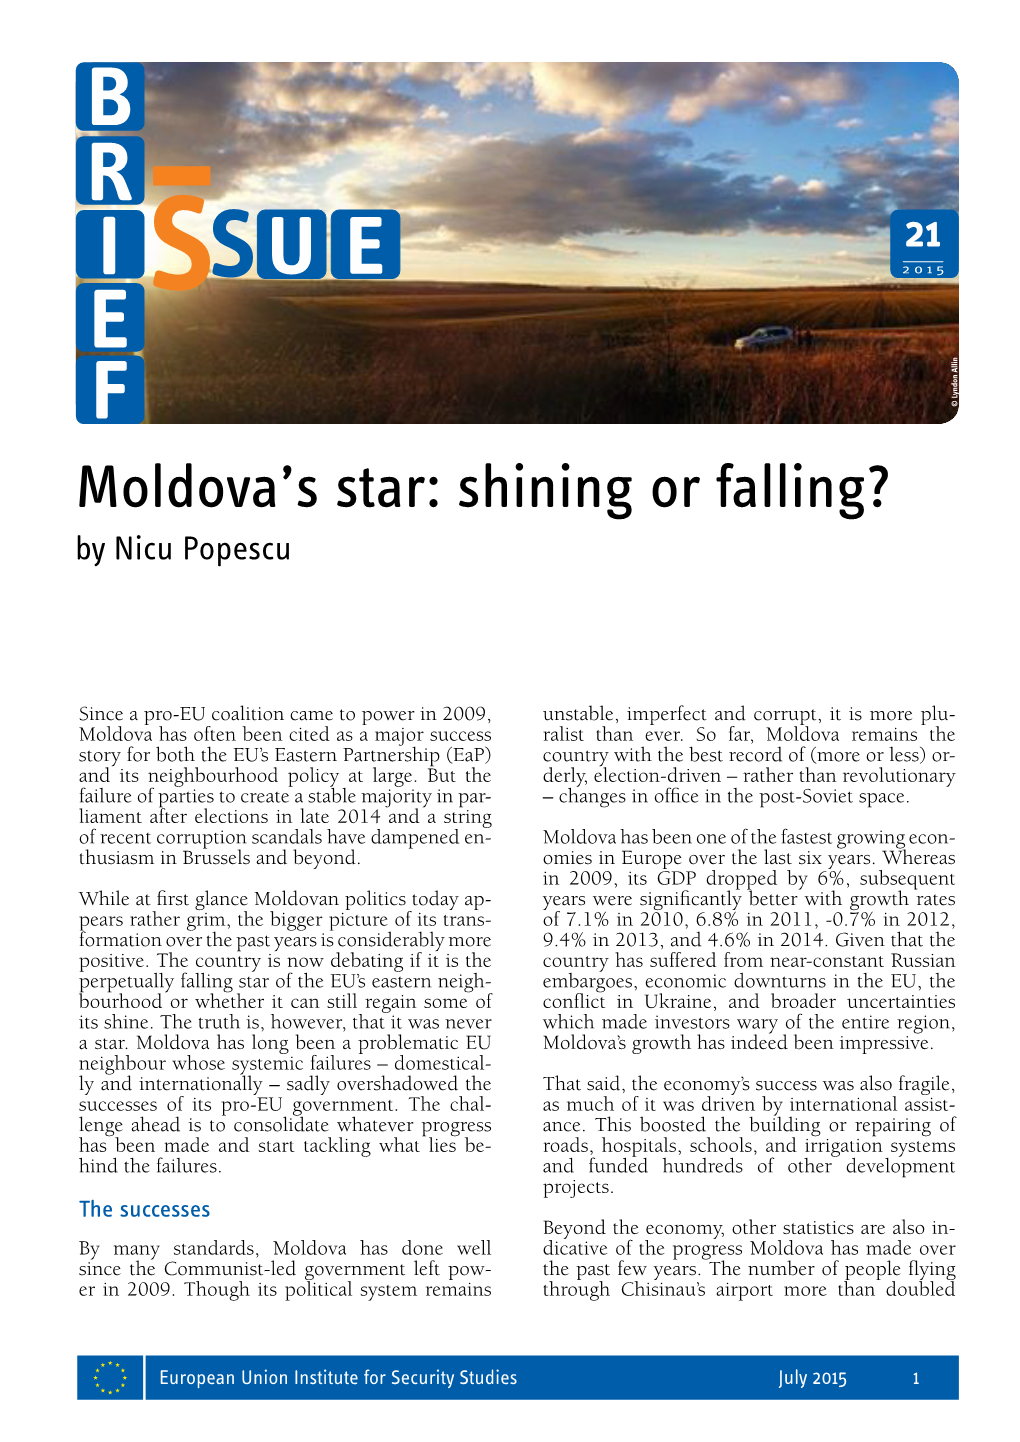 Moldova's Star: Shining Or Falling?